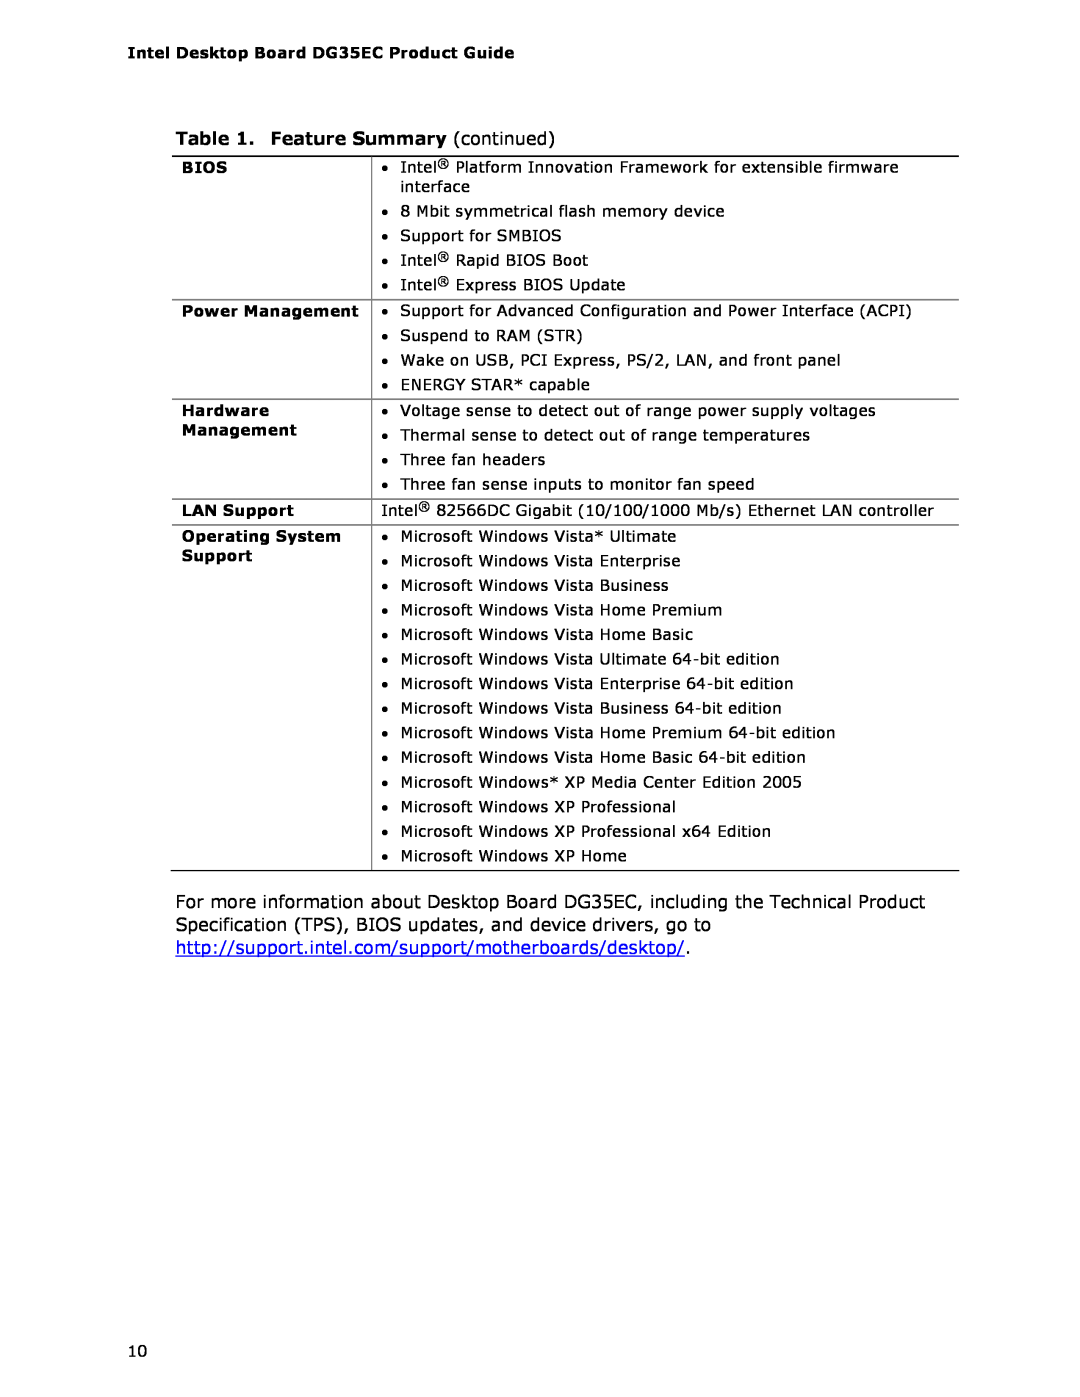 Intel Intel Desktop Board, DG35EC manual Feature Summary continued 